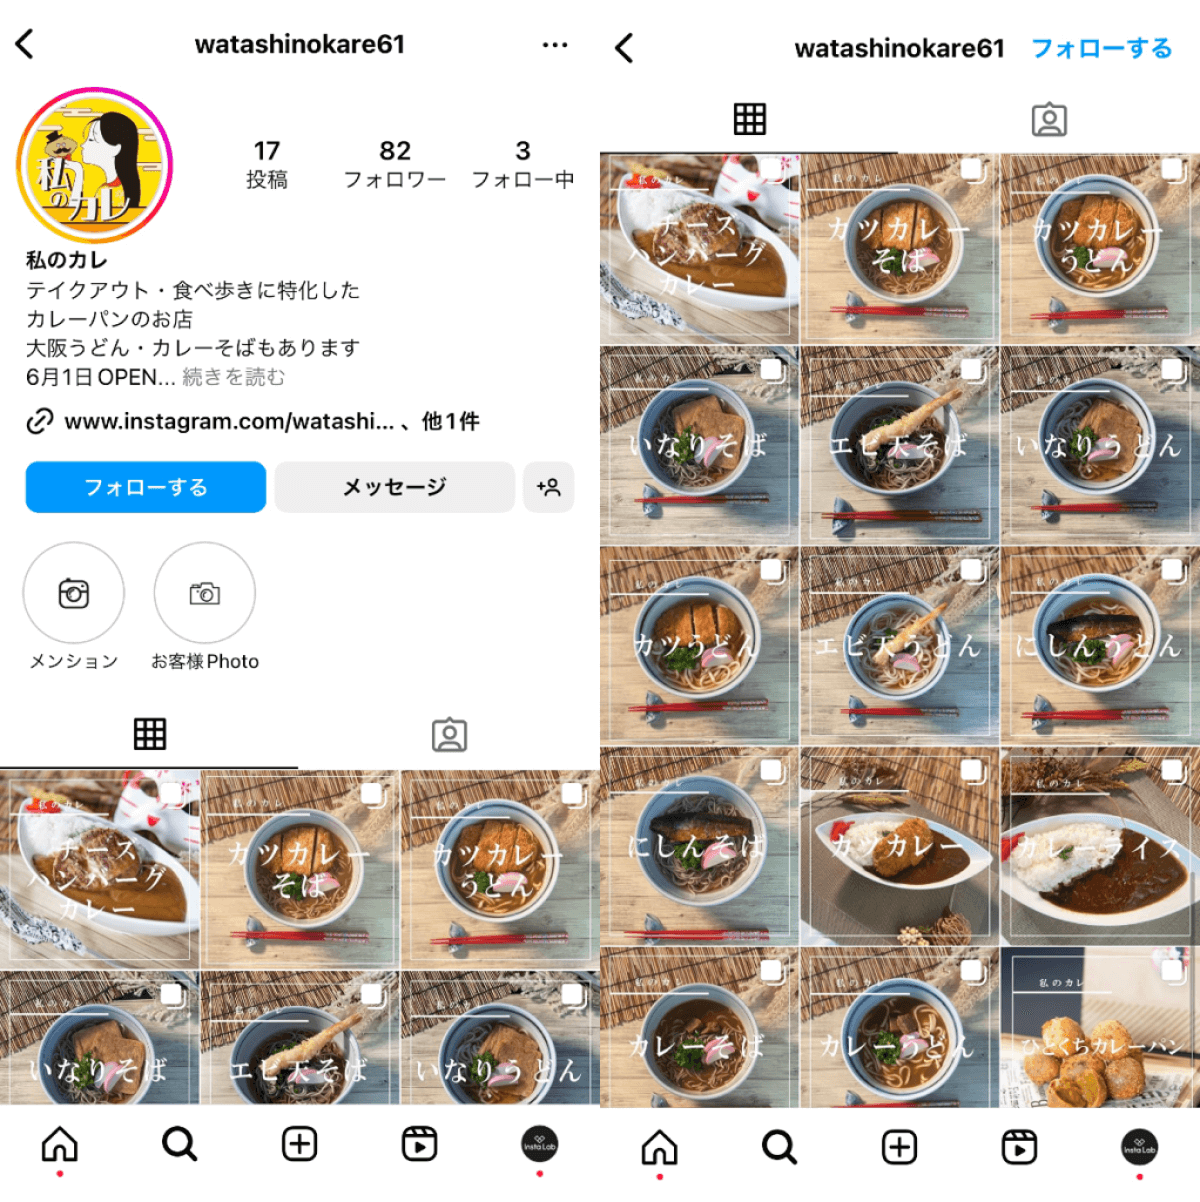 instagram-account-watashinokare61